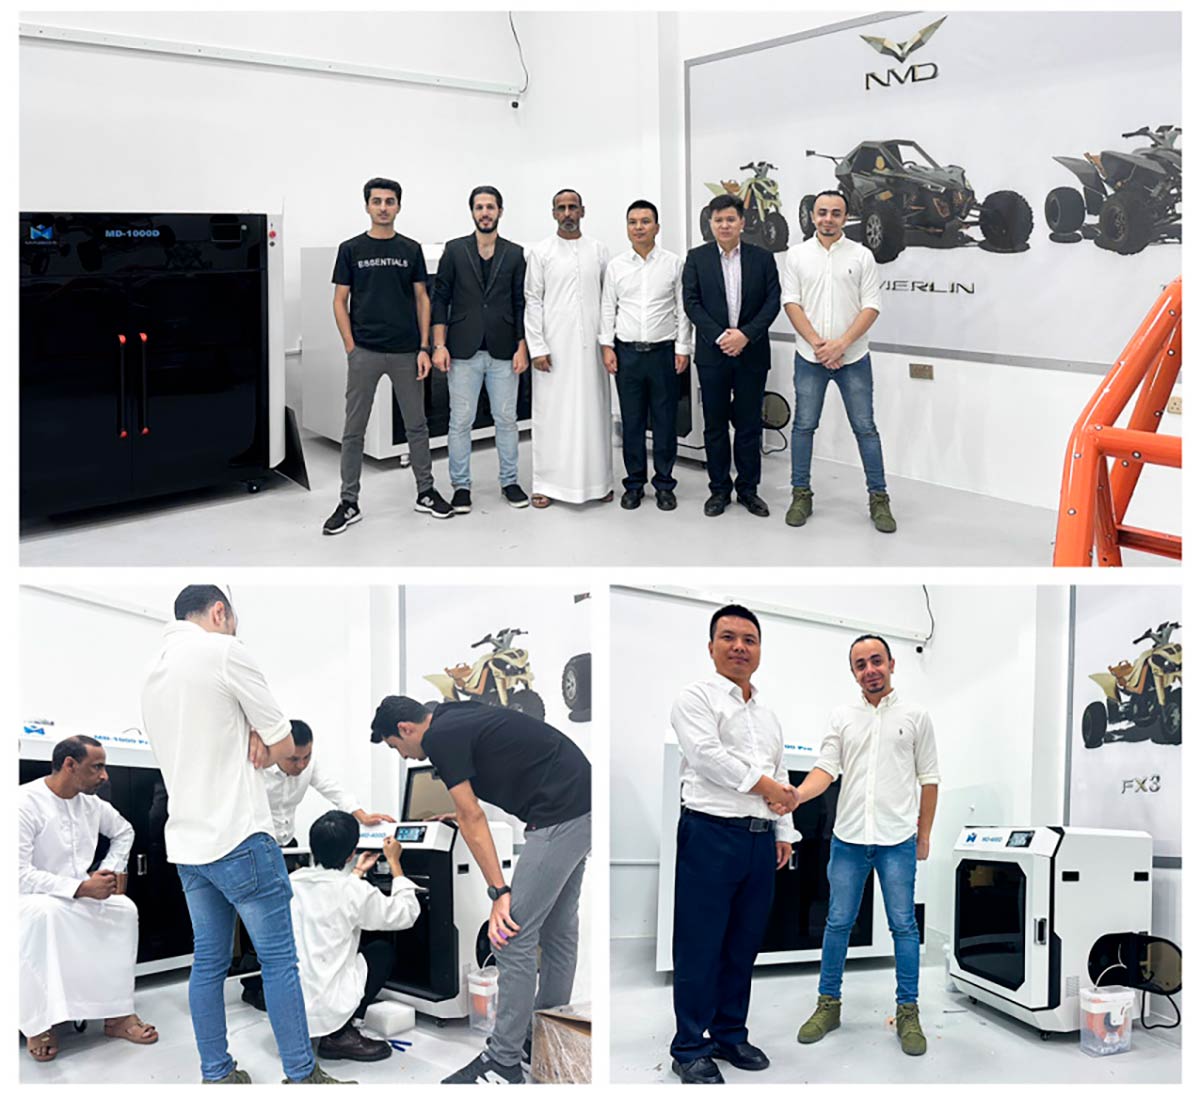 MINGDA 3D углубляет сотрудничество с автомобильным заводом NMD: Новаторский и инновационный подход к технологии 3D печати автомобильных и мото-запчастей